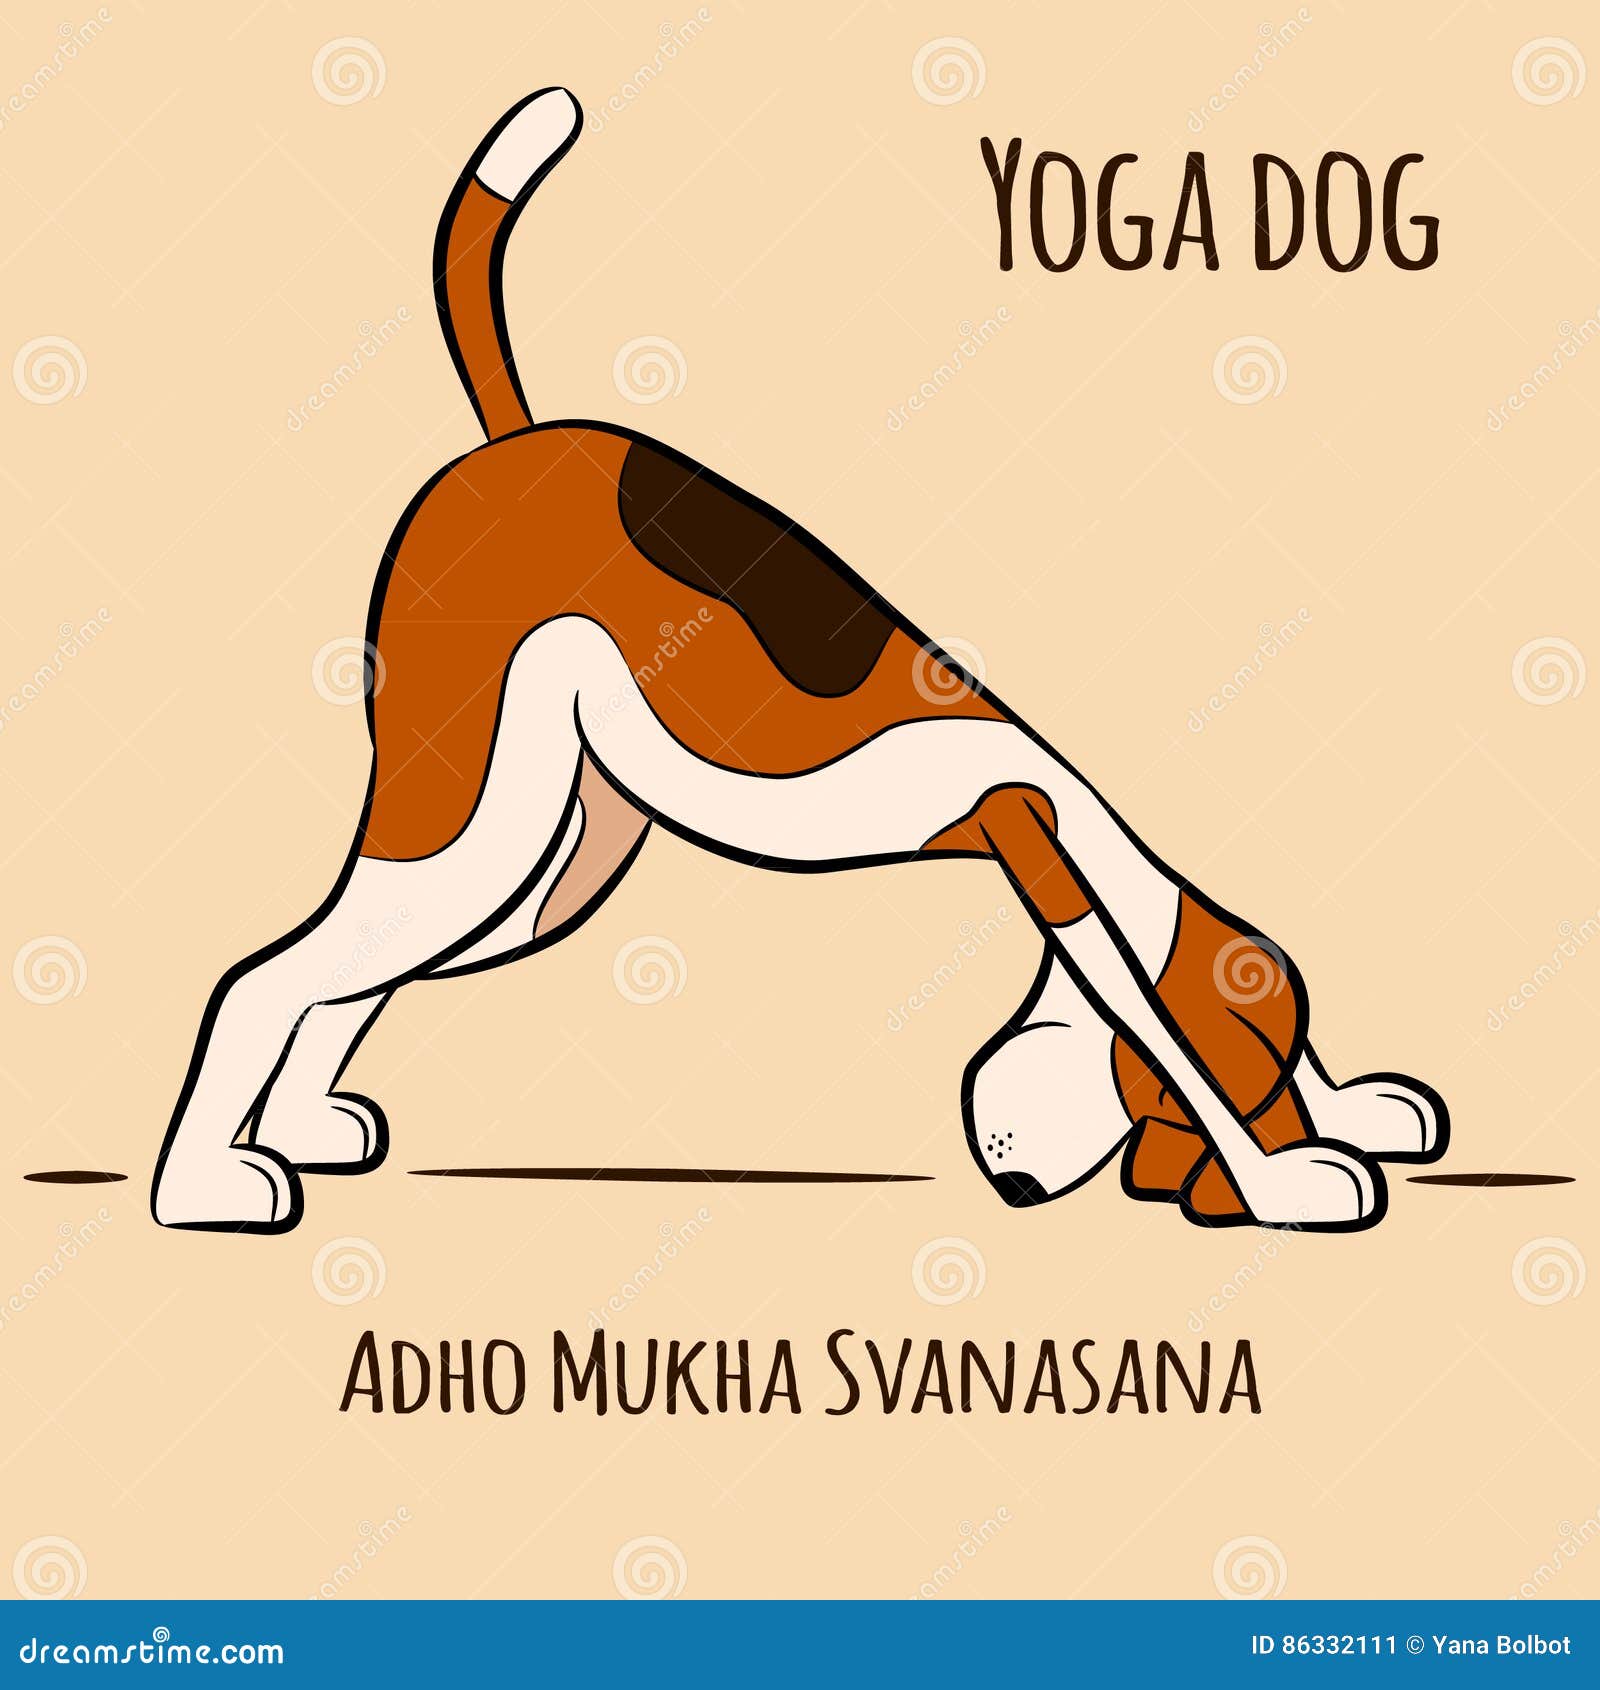 cartoon dog shows yoga pose adho mukha svanasana